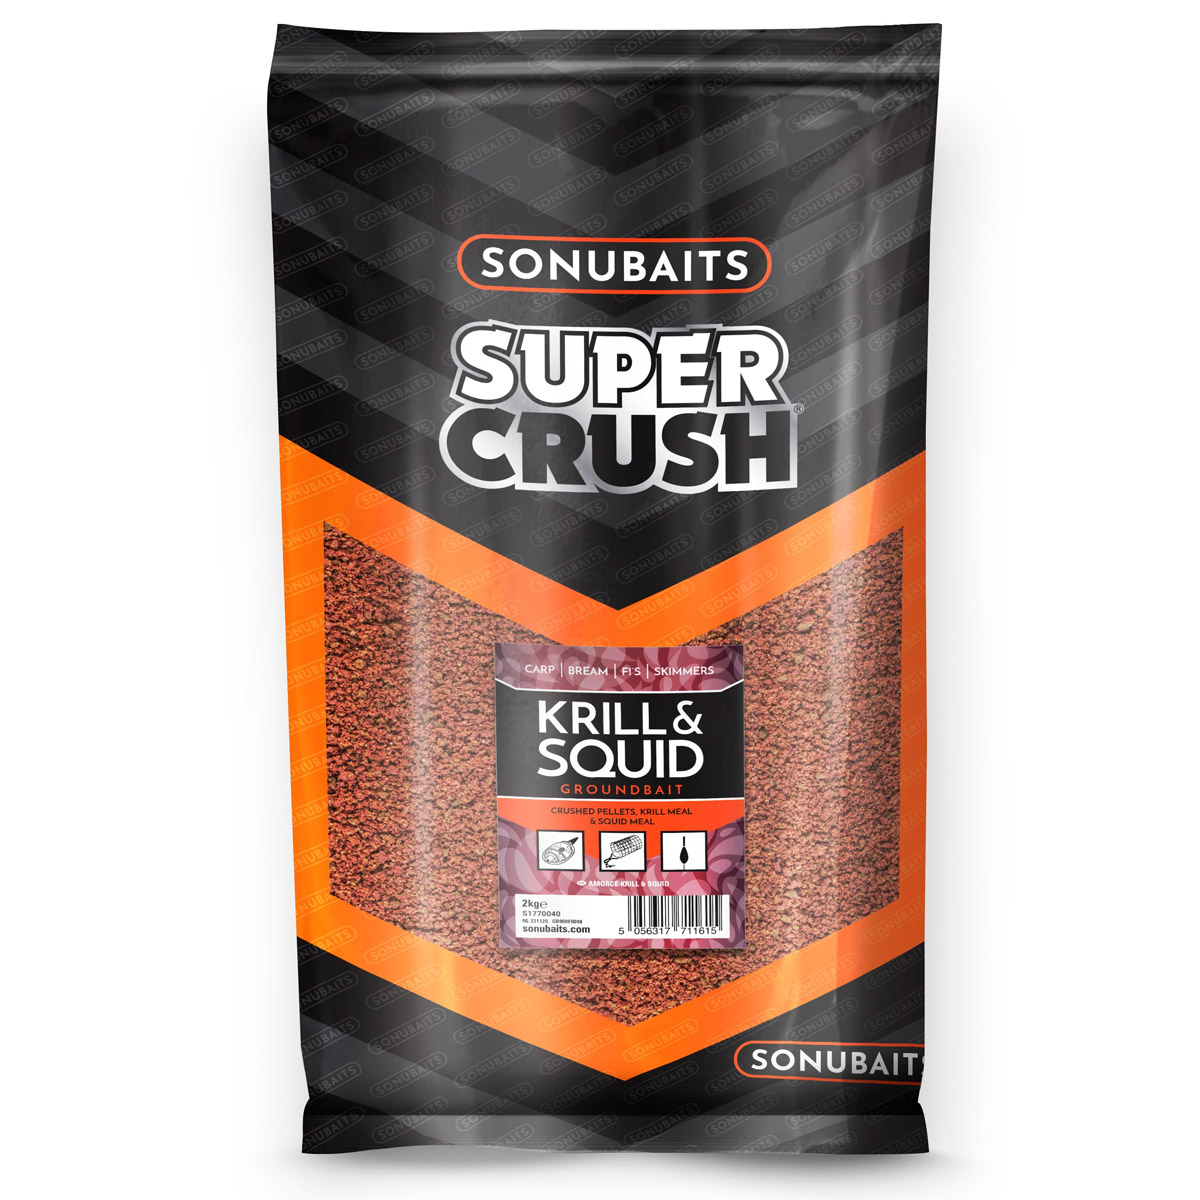 Sonubaits Krill & Squid Groundbait 2 KG